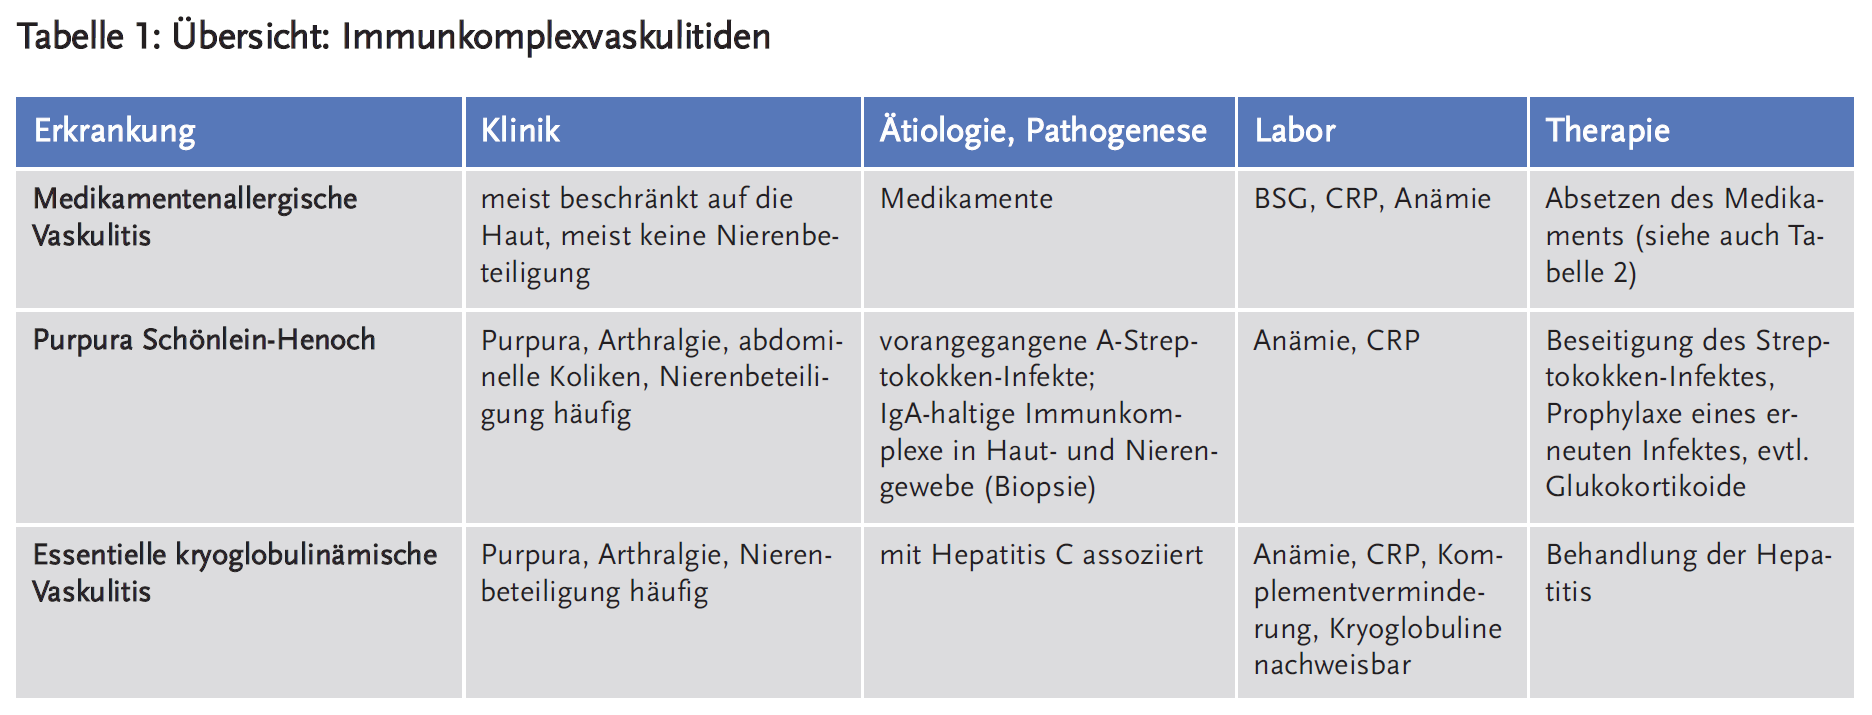 Tabelle 1: Übersicht: Immunkomplexvaskulitiden